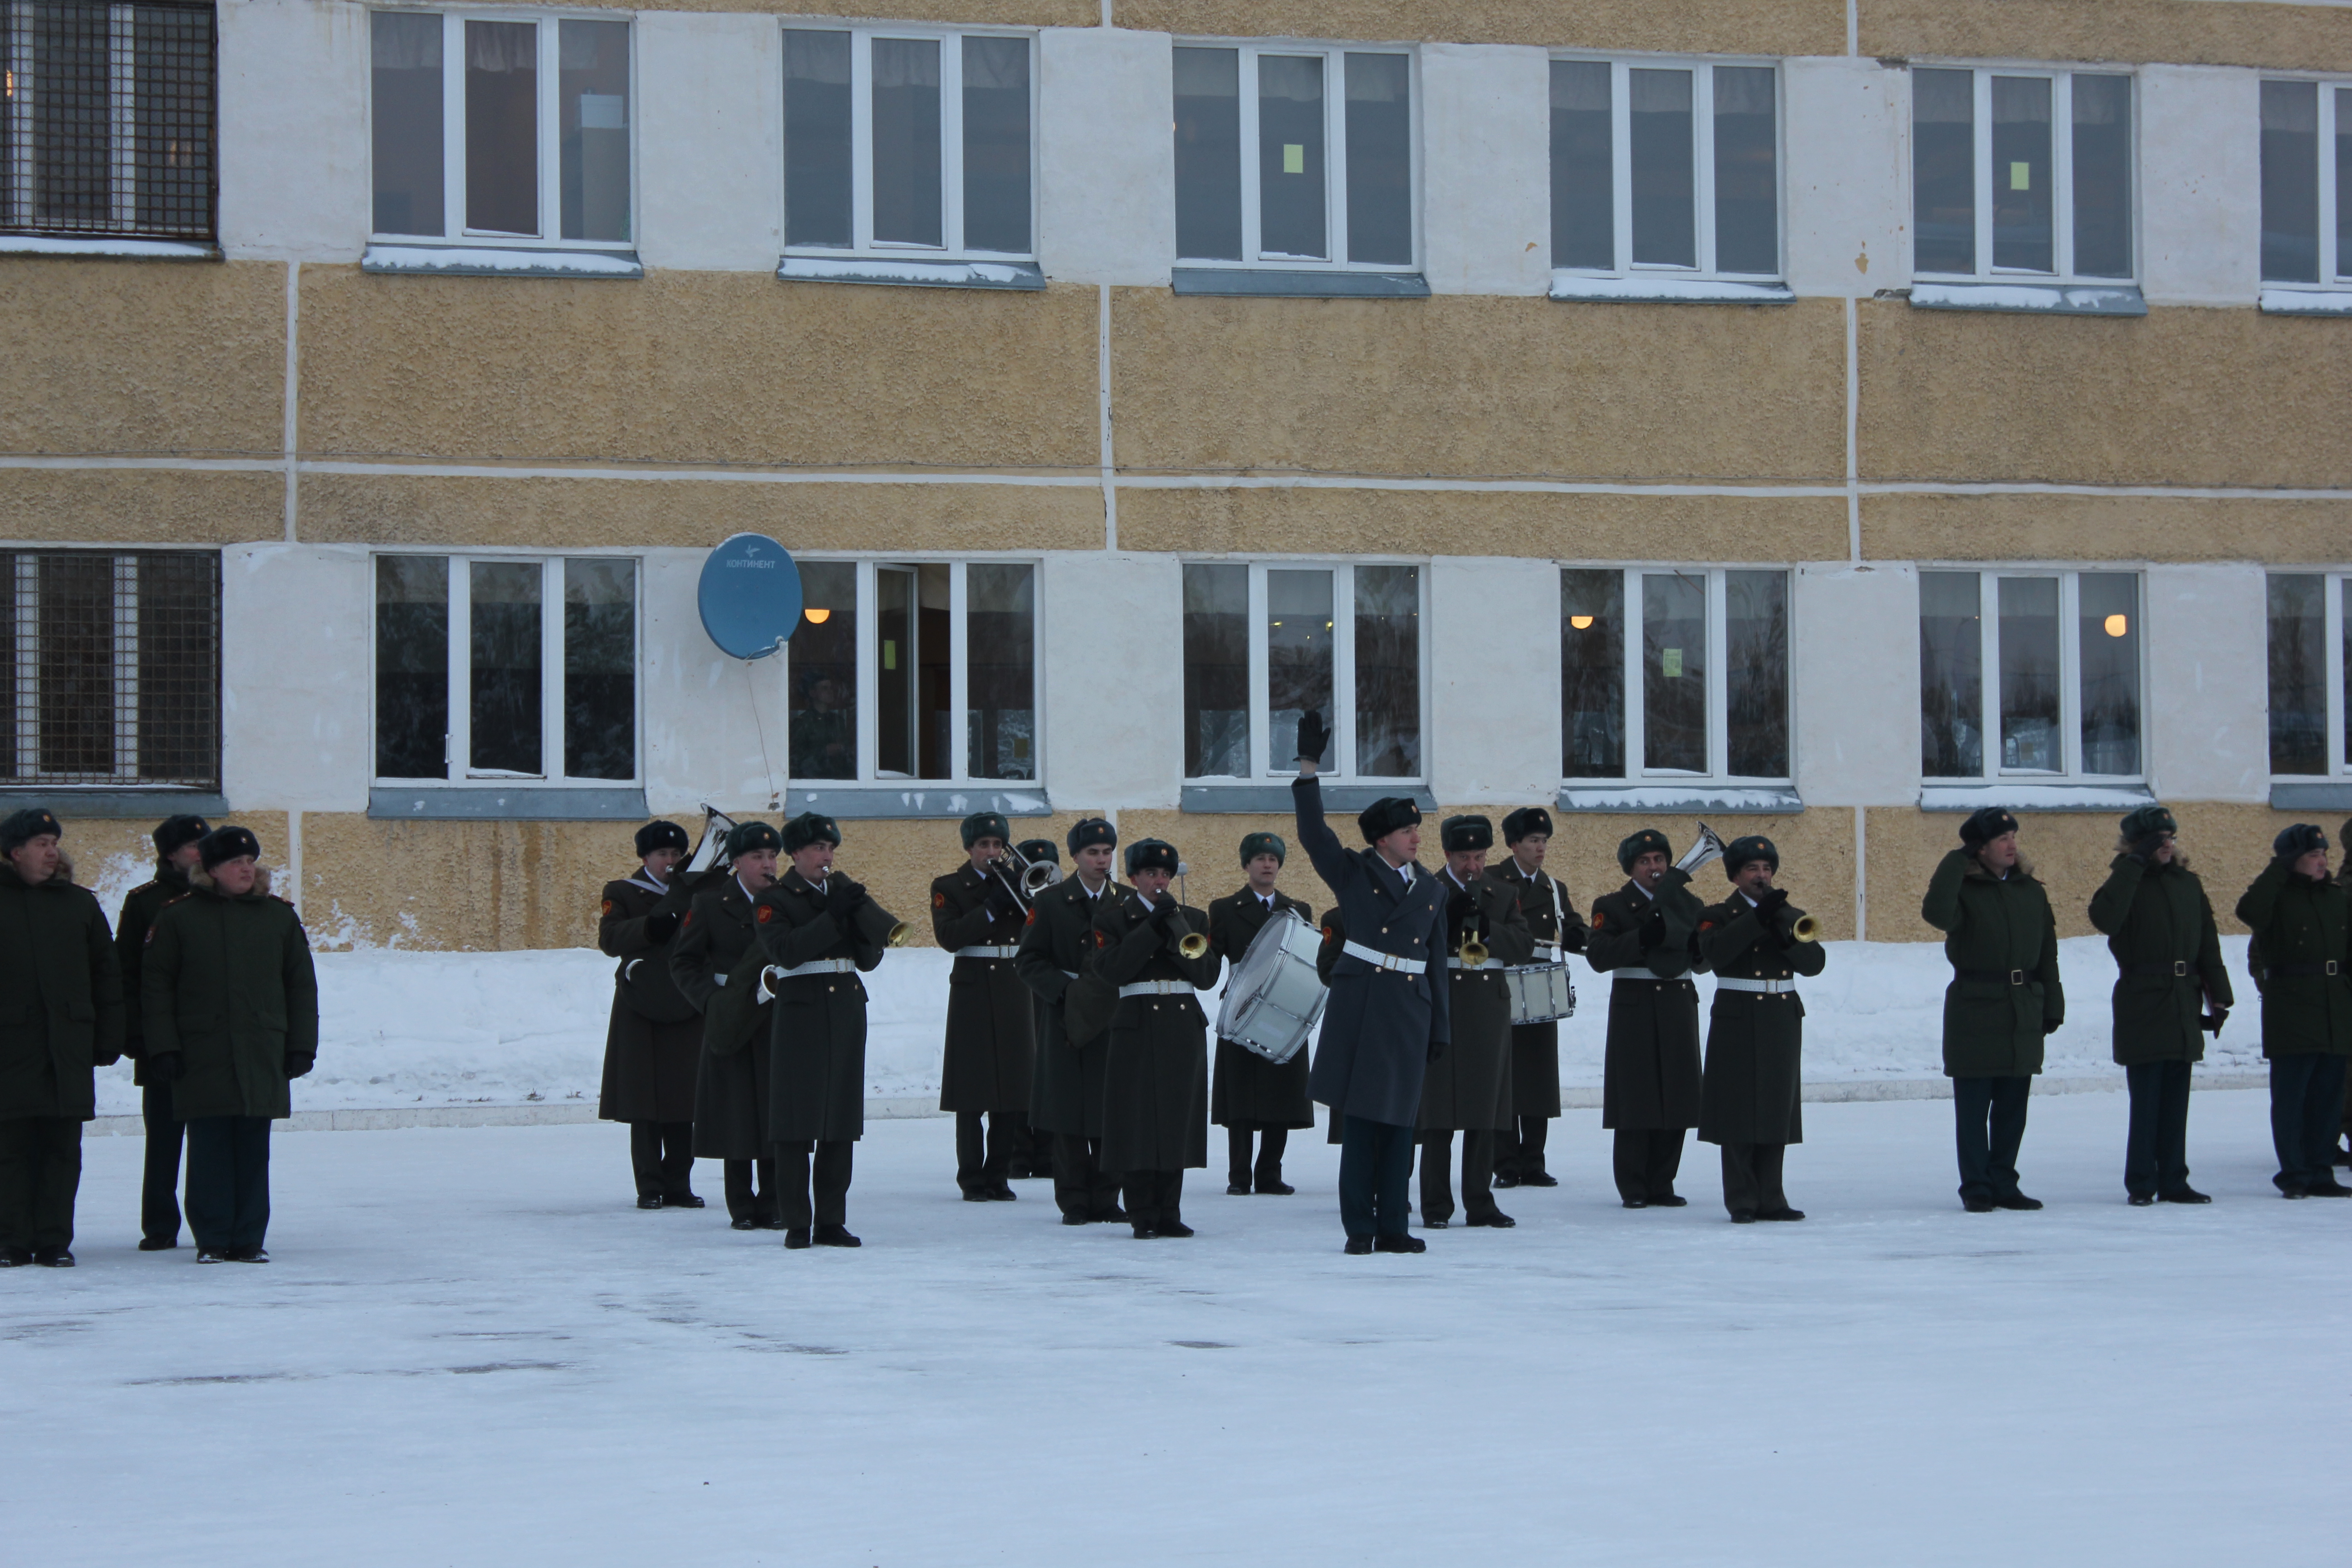 Как живут солдаты в российской армии - 23 февраля 2016 года